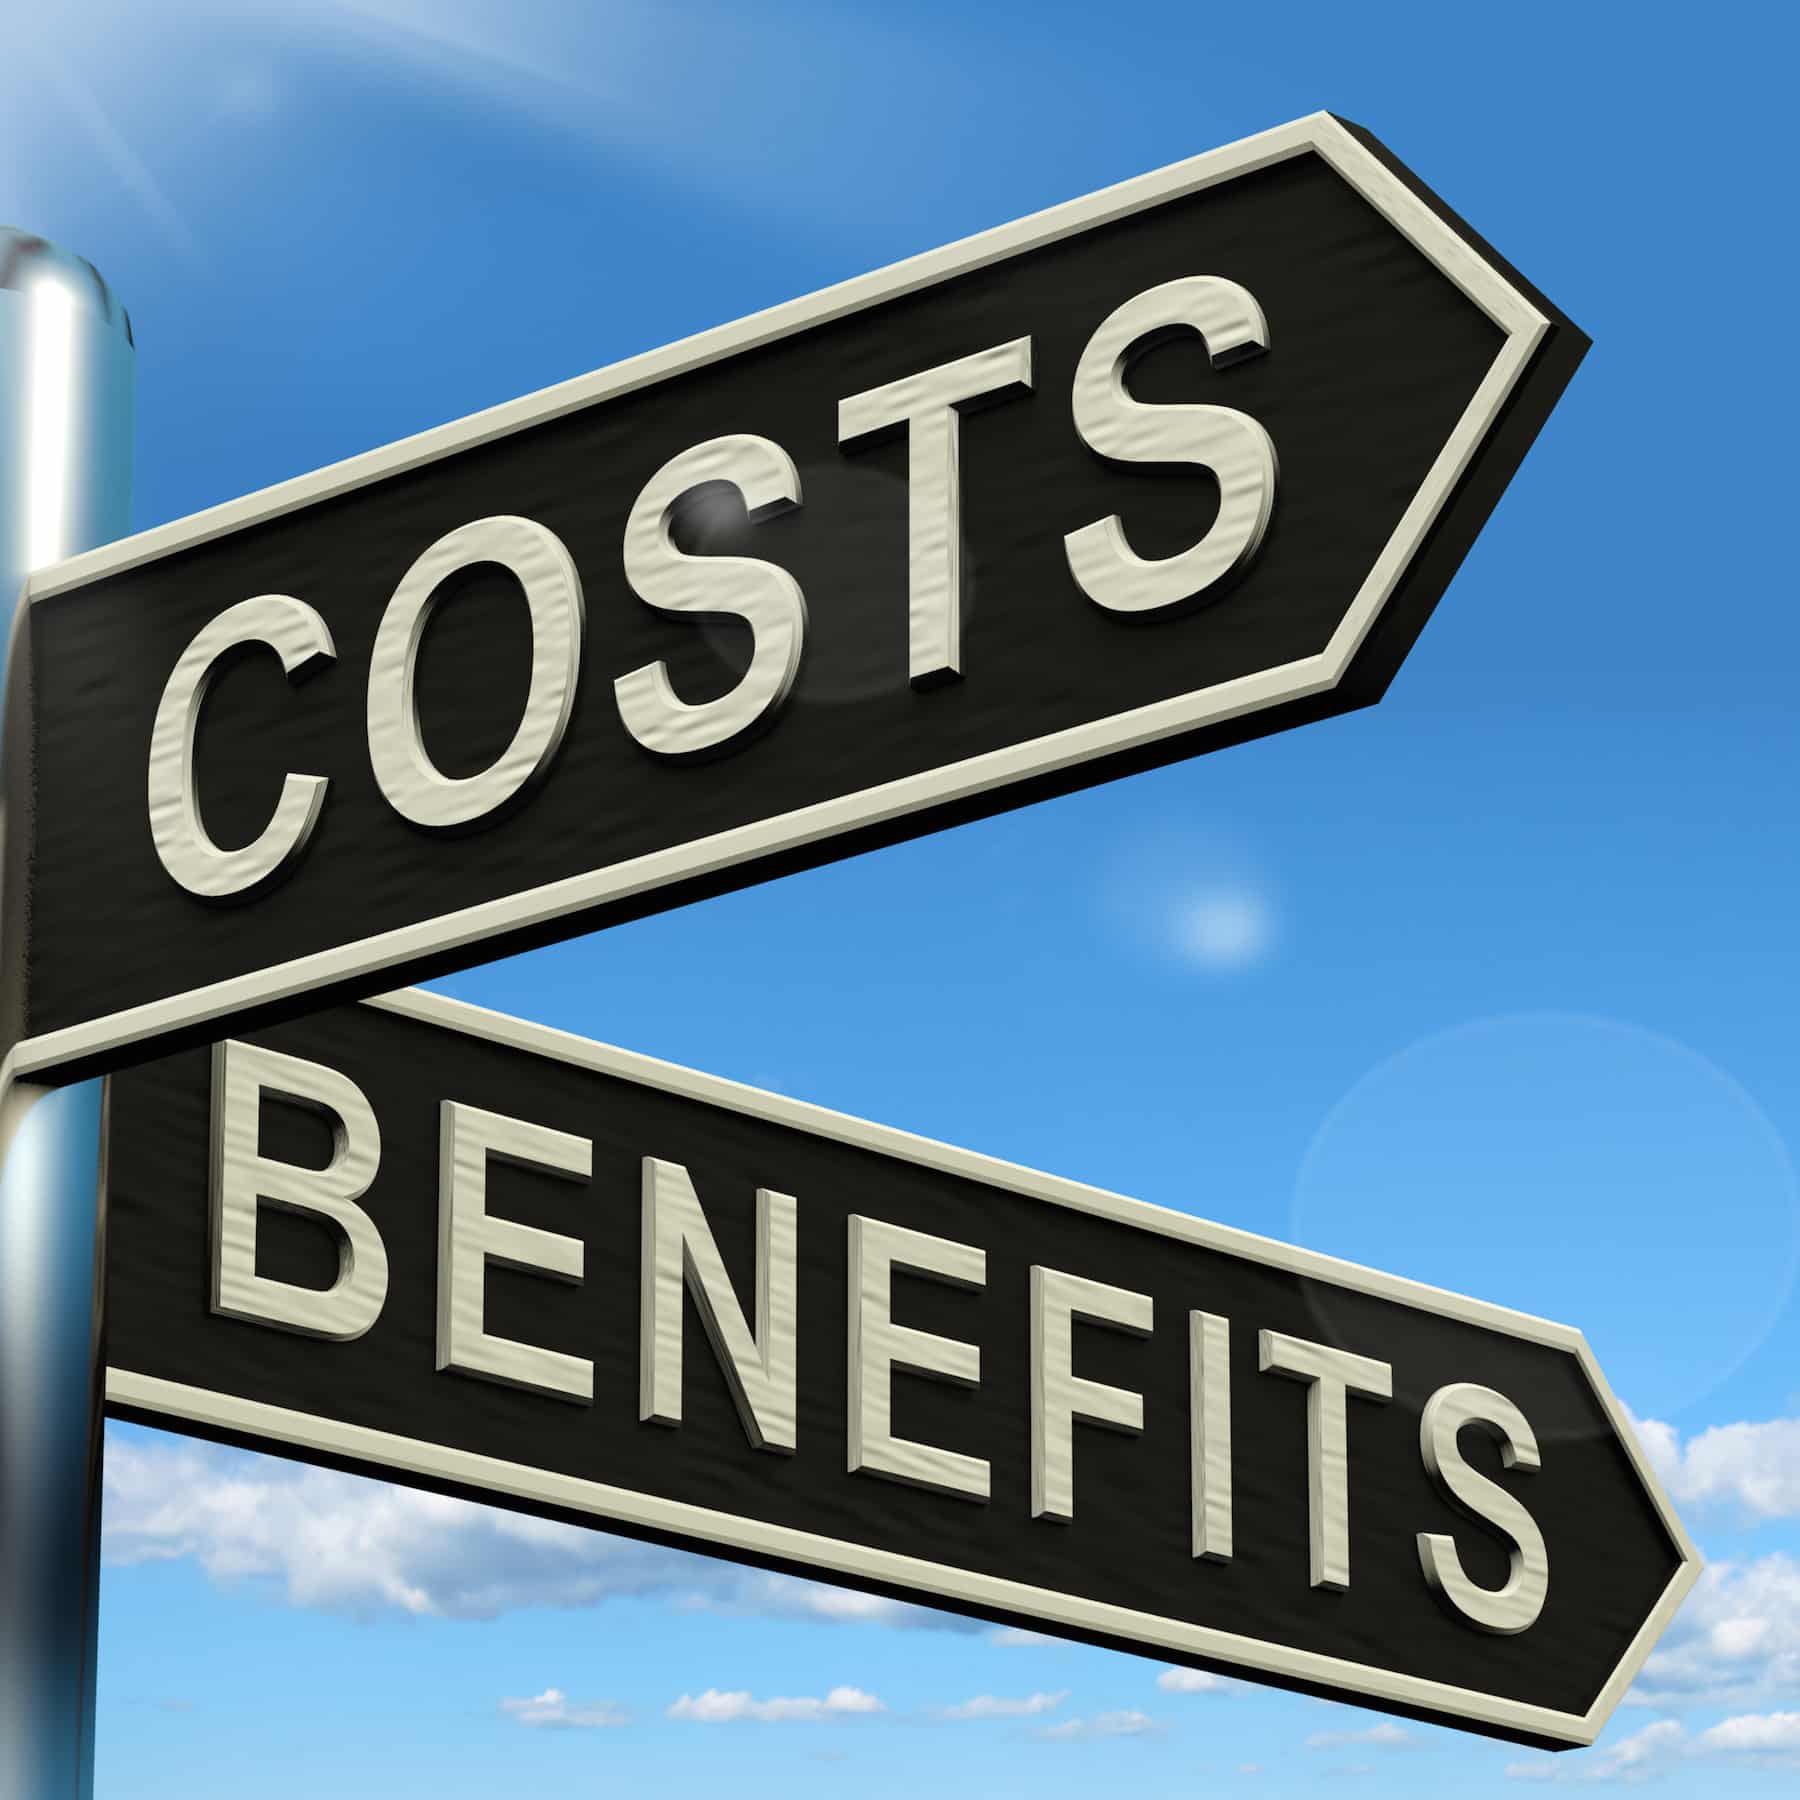 Benefits verse Costs